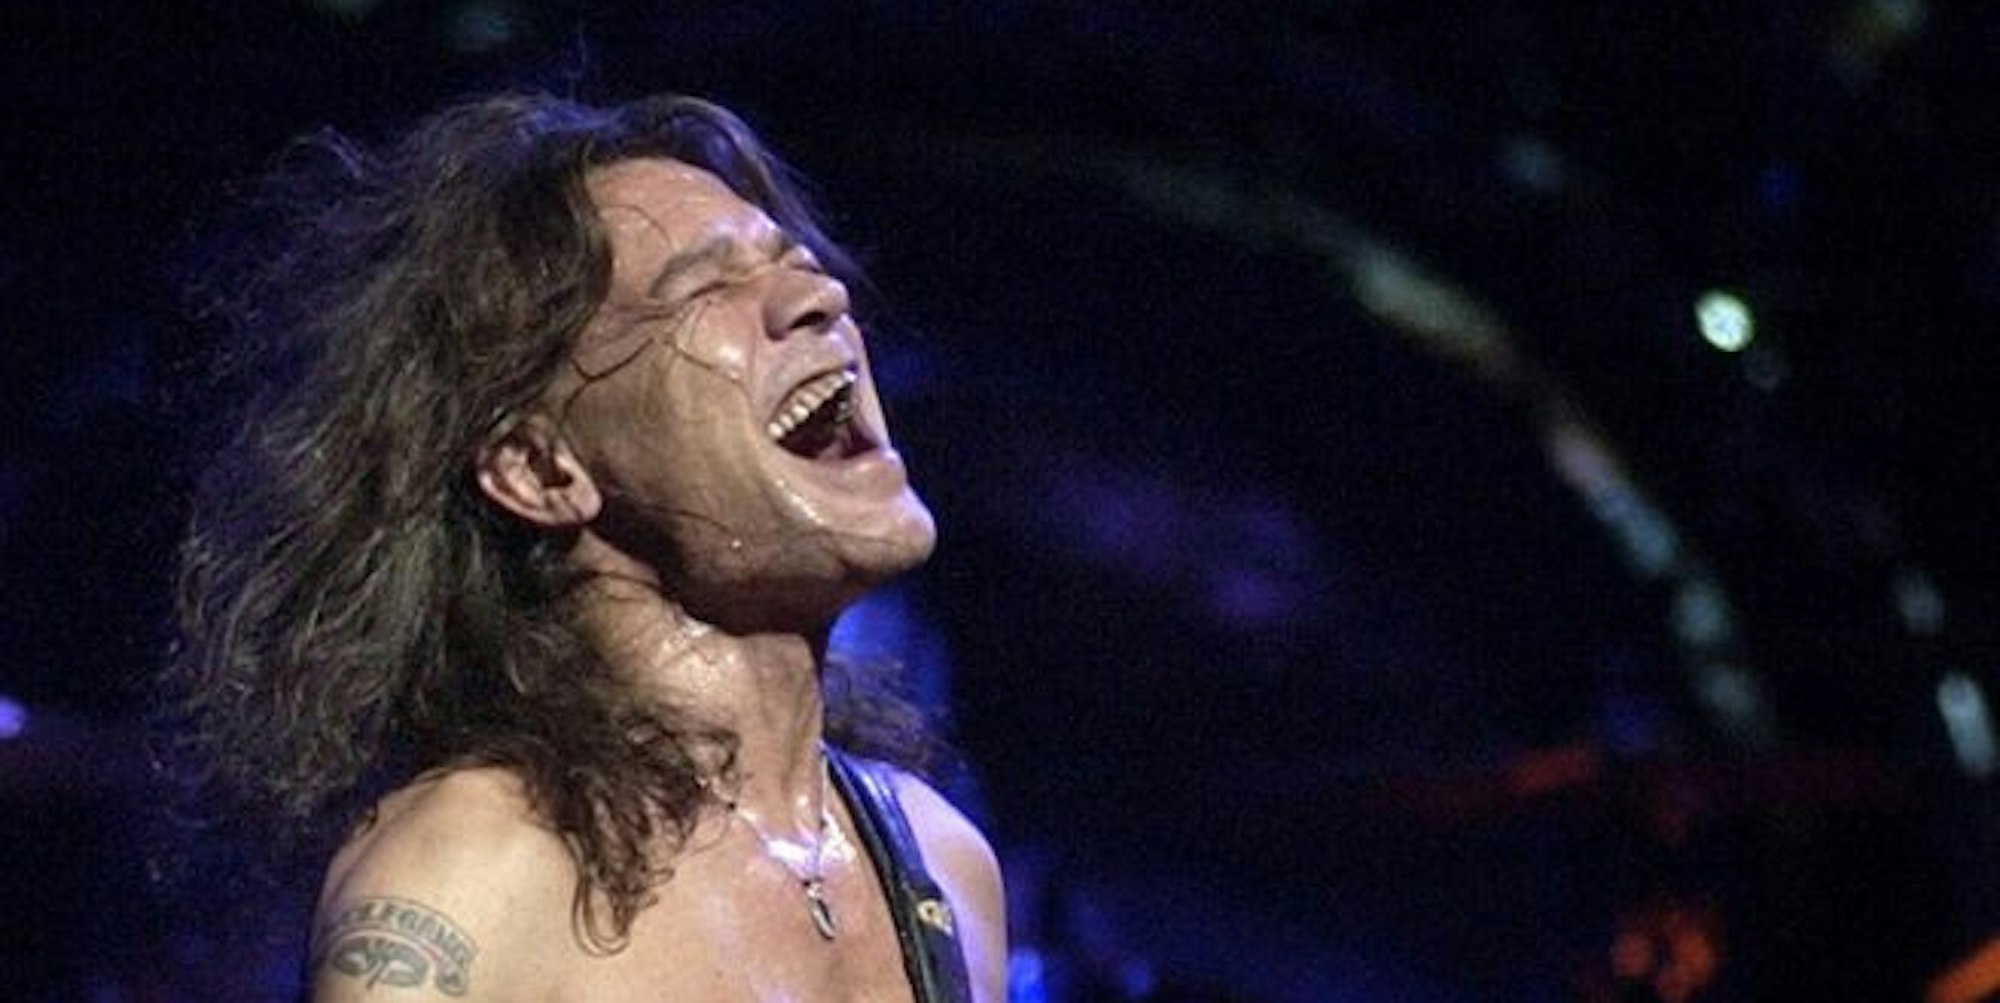 Eddie Van Halen im Jahr 2004